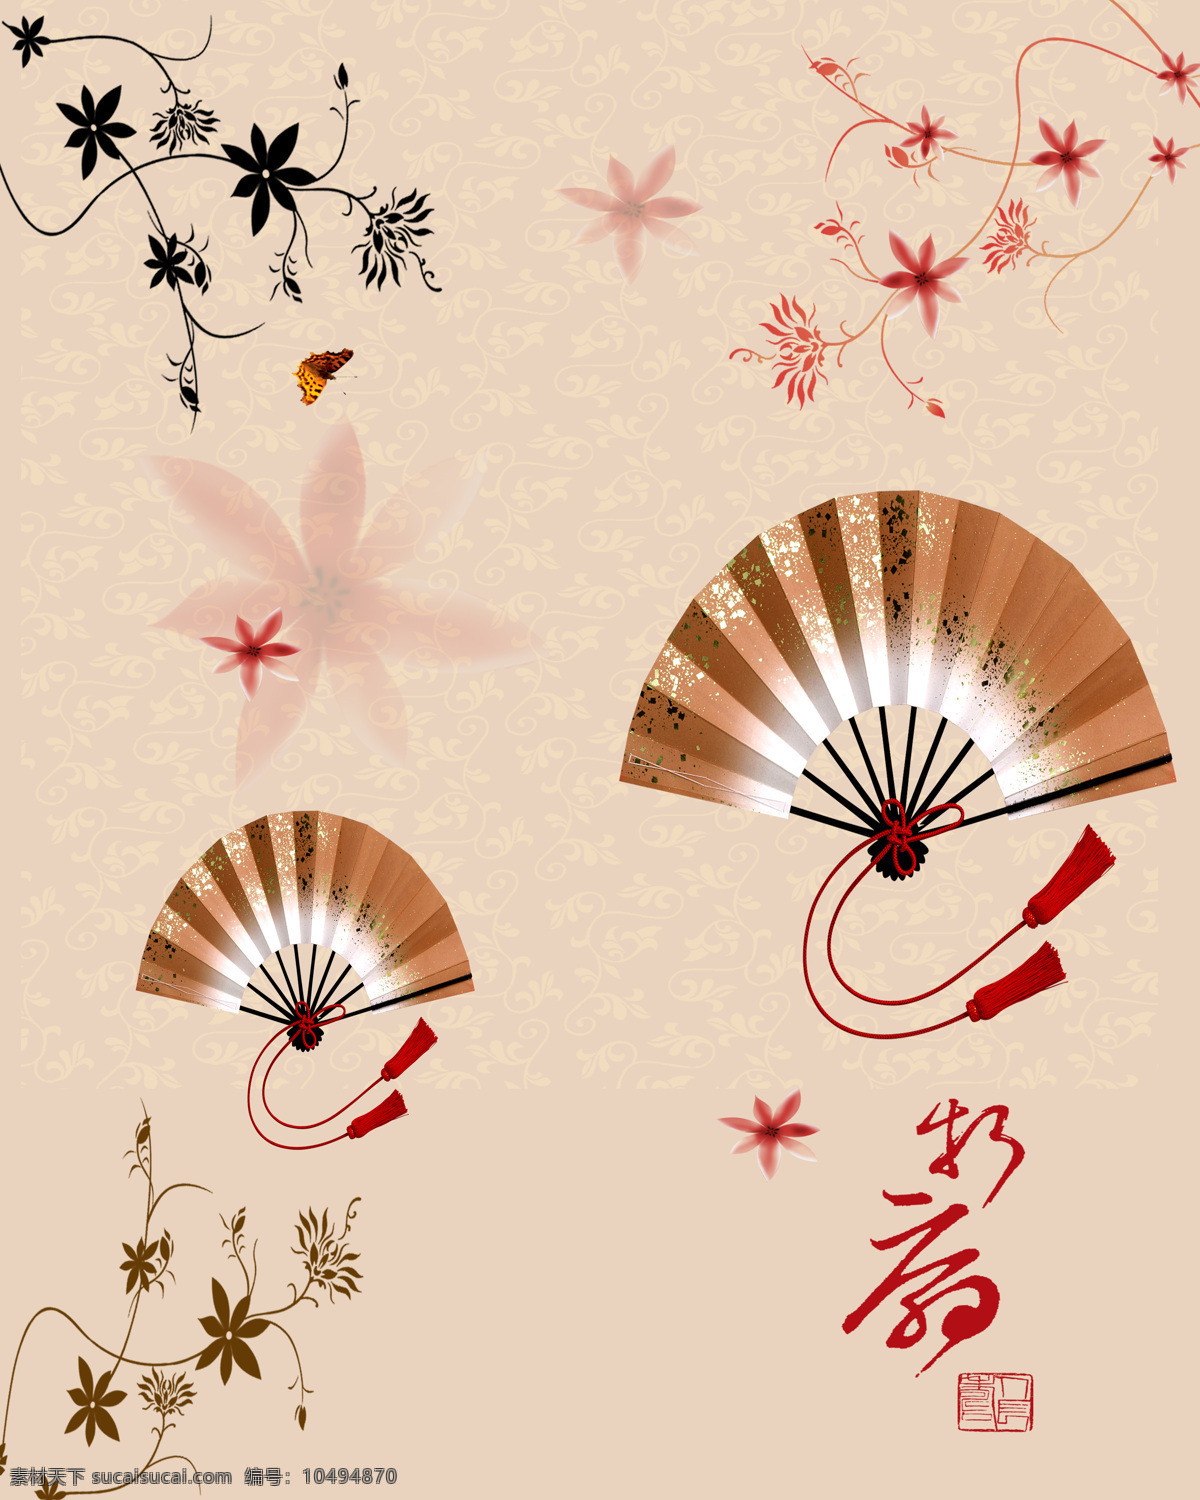 中国 元素 扇子 纹理 背景 花纹 风景 生活 旅游餐饮